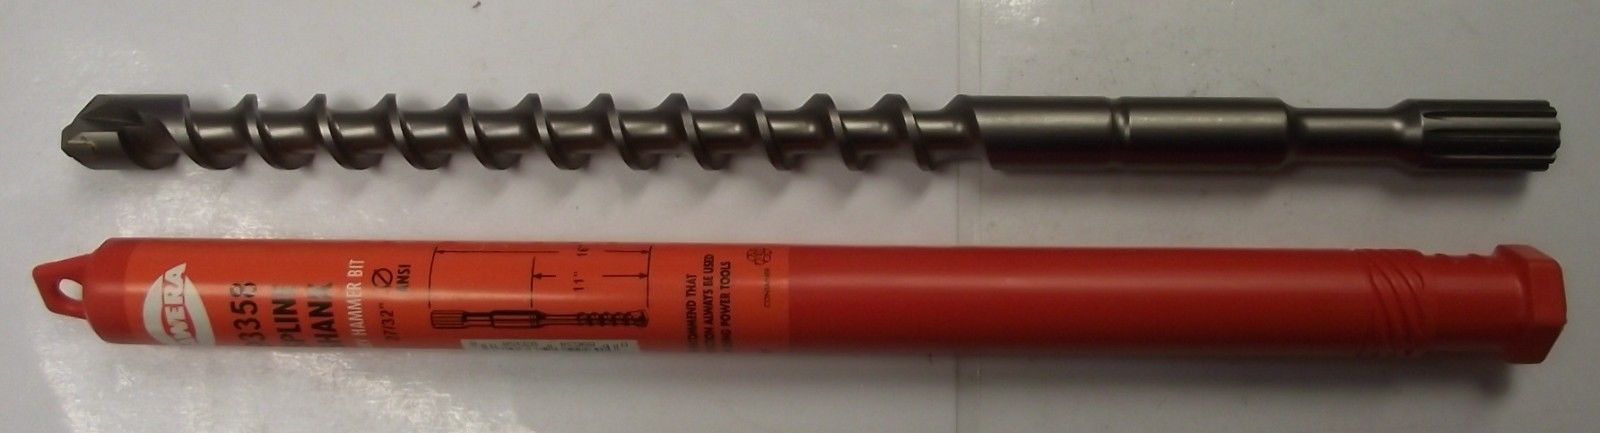 Hawera 93358 Spline Shank Rotary Hammer Drill Bit 27/32" x 11" x 16" Germany